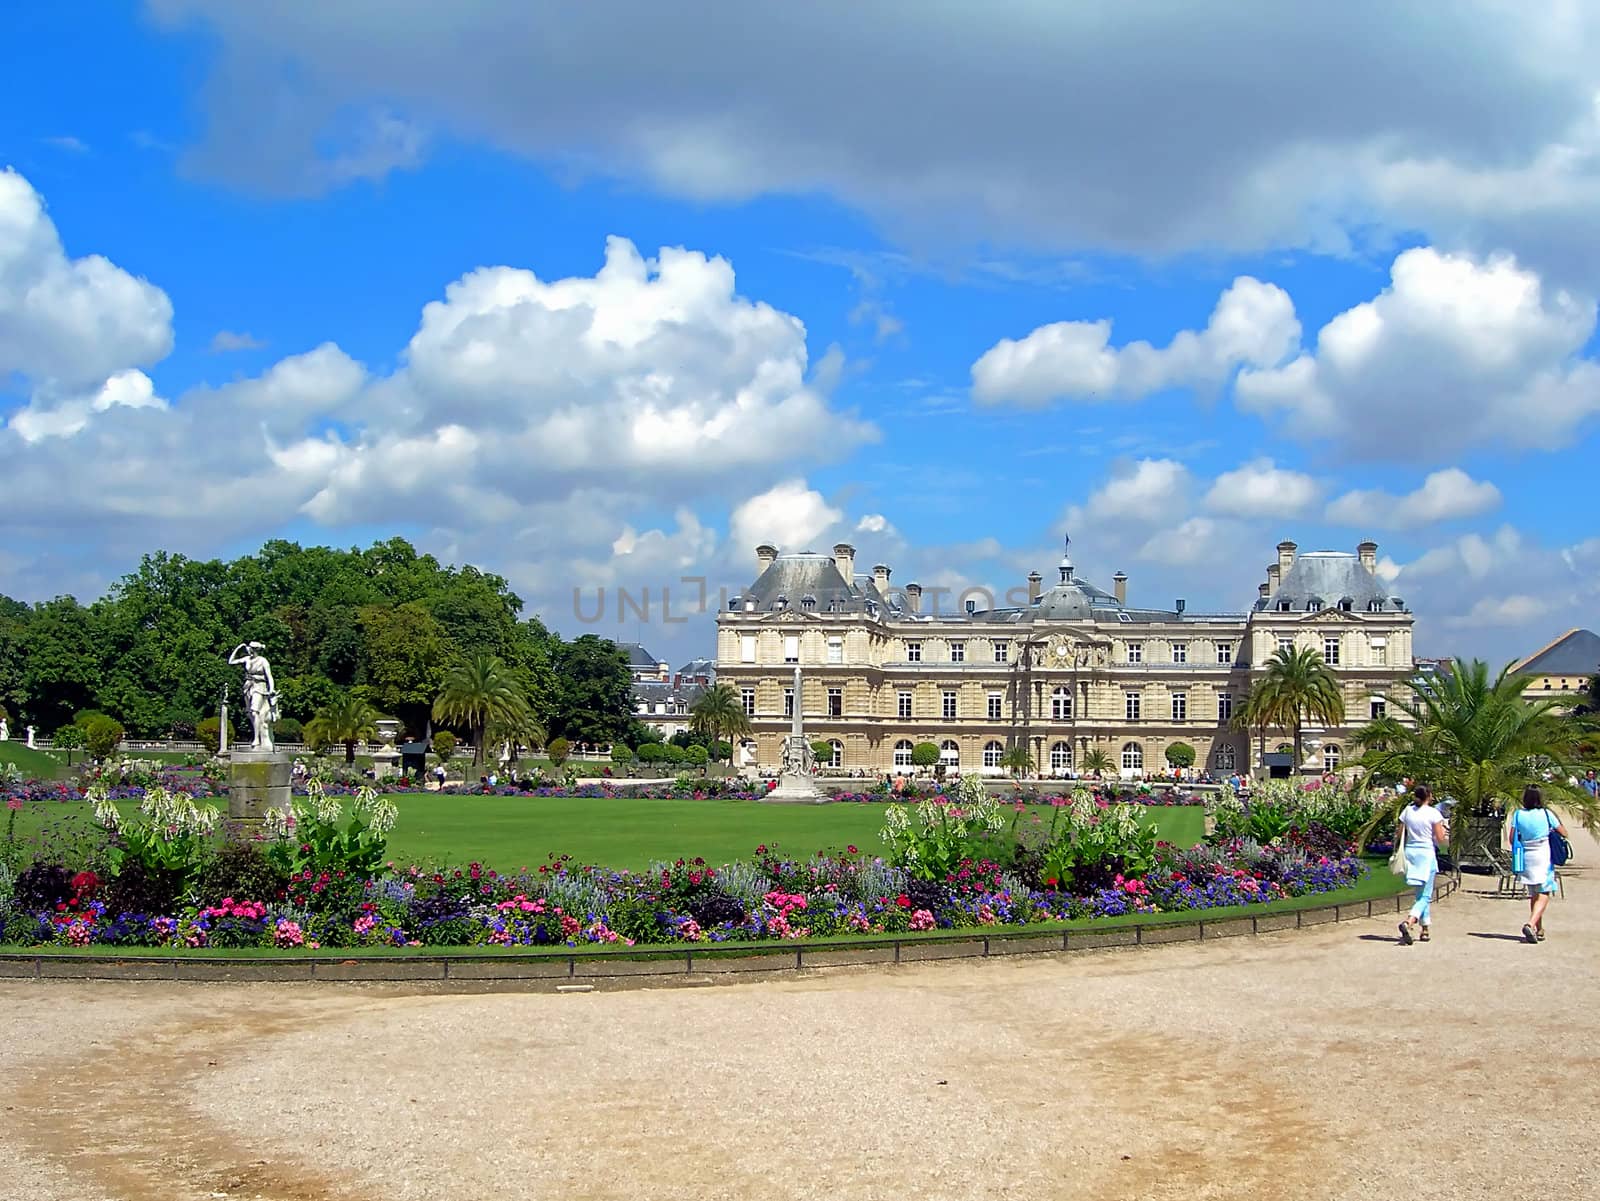 luxembourg palace by drakodav